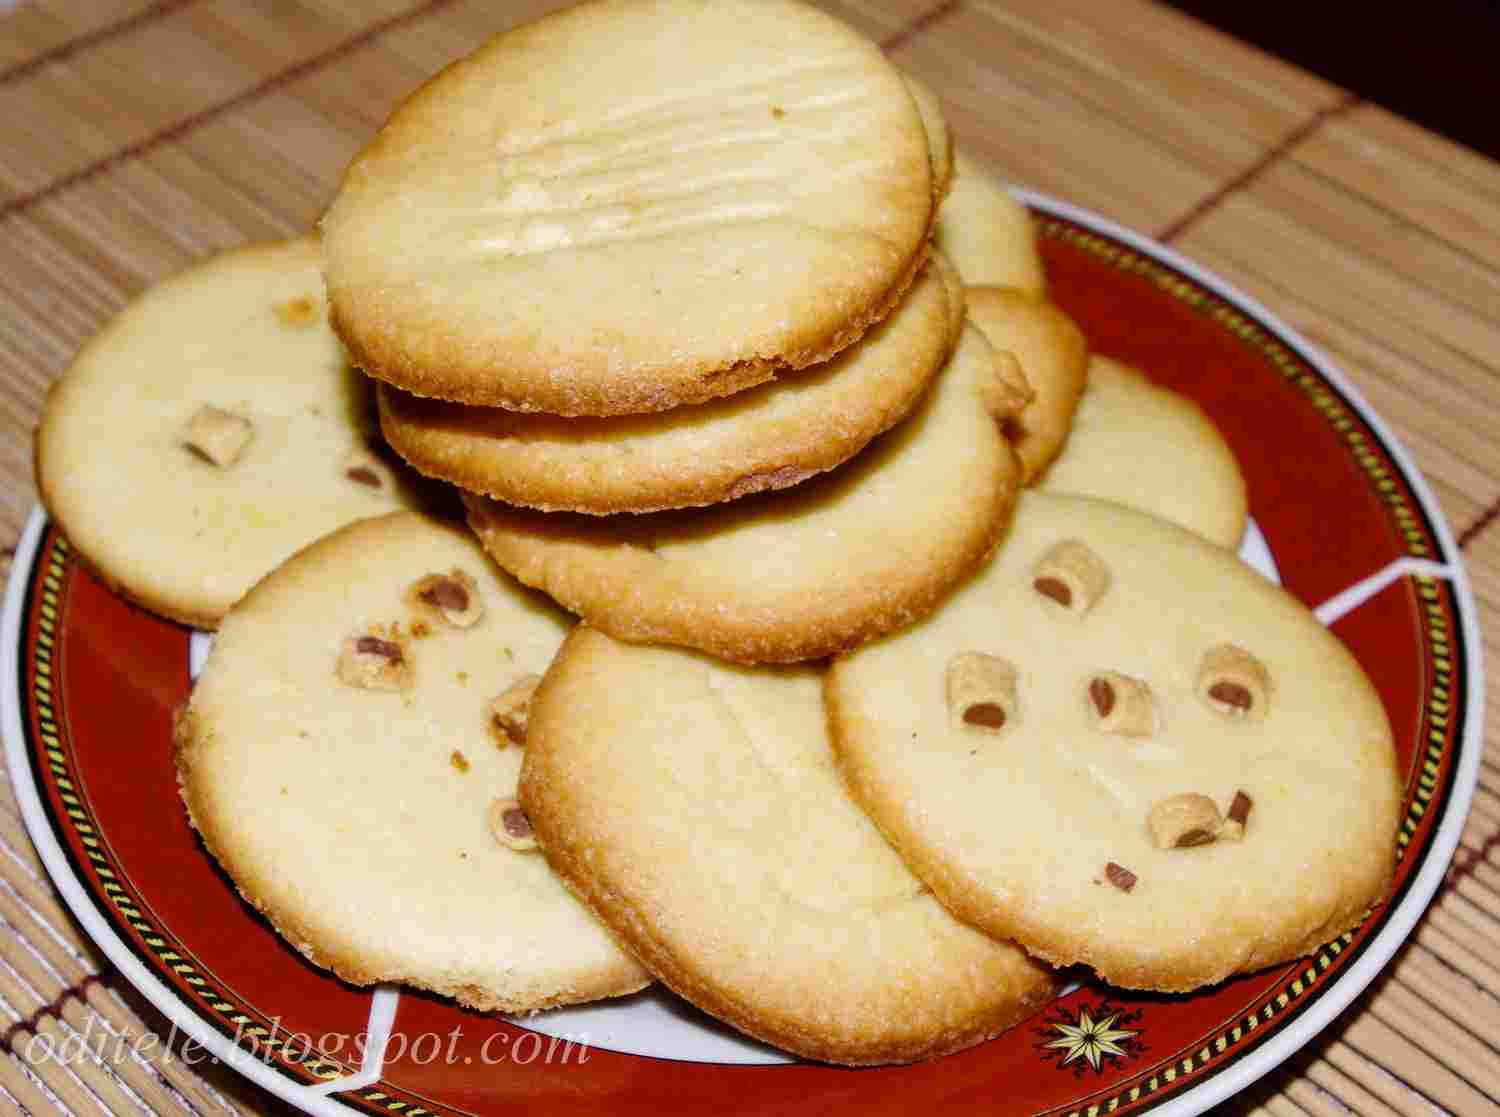 Paprastai ir greitai pagaminami kaimiški sausainiai iš 5 ingredientų